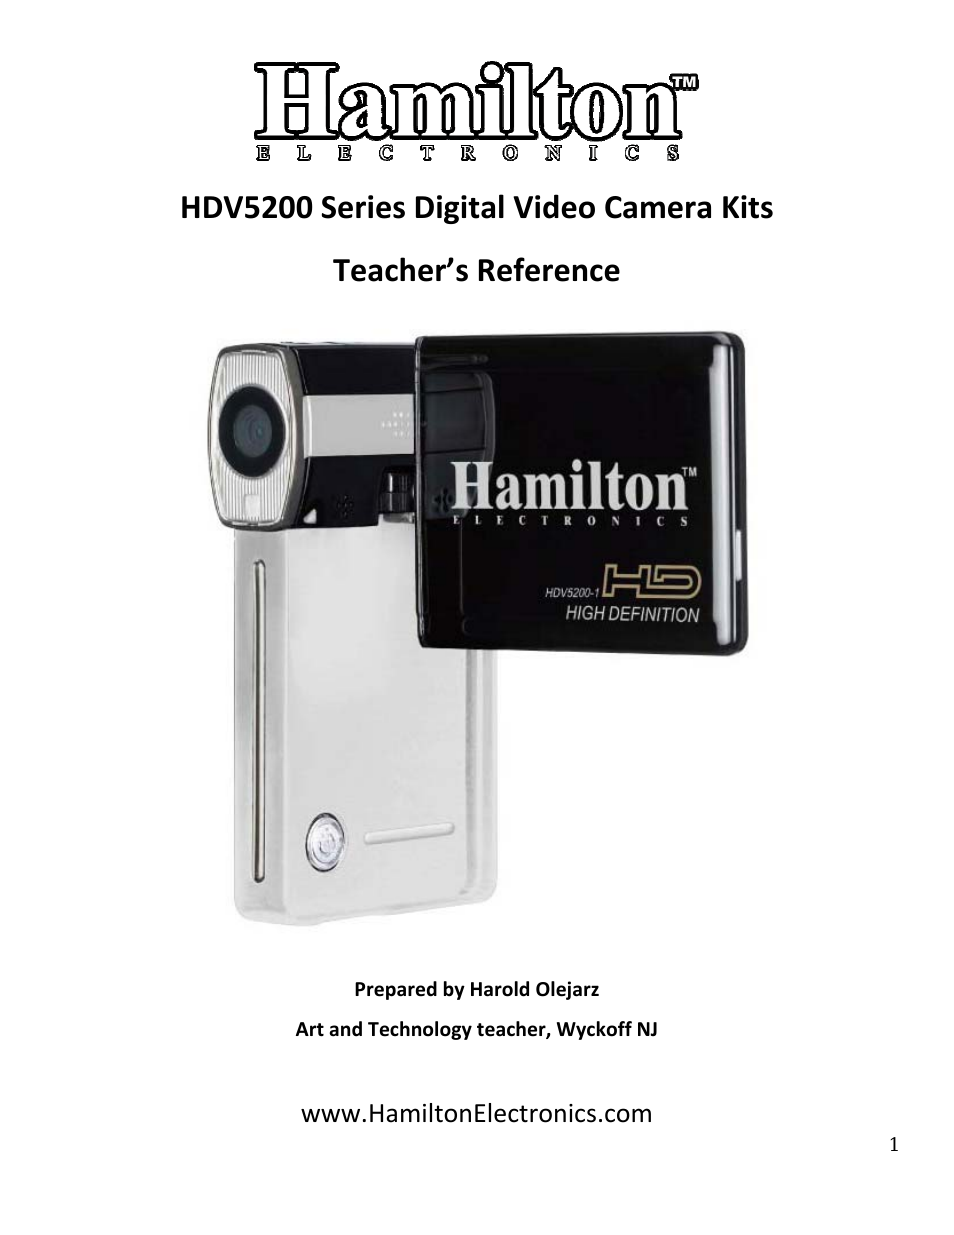 Hamilton HDV5200 Curriculum